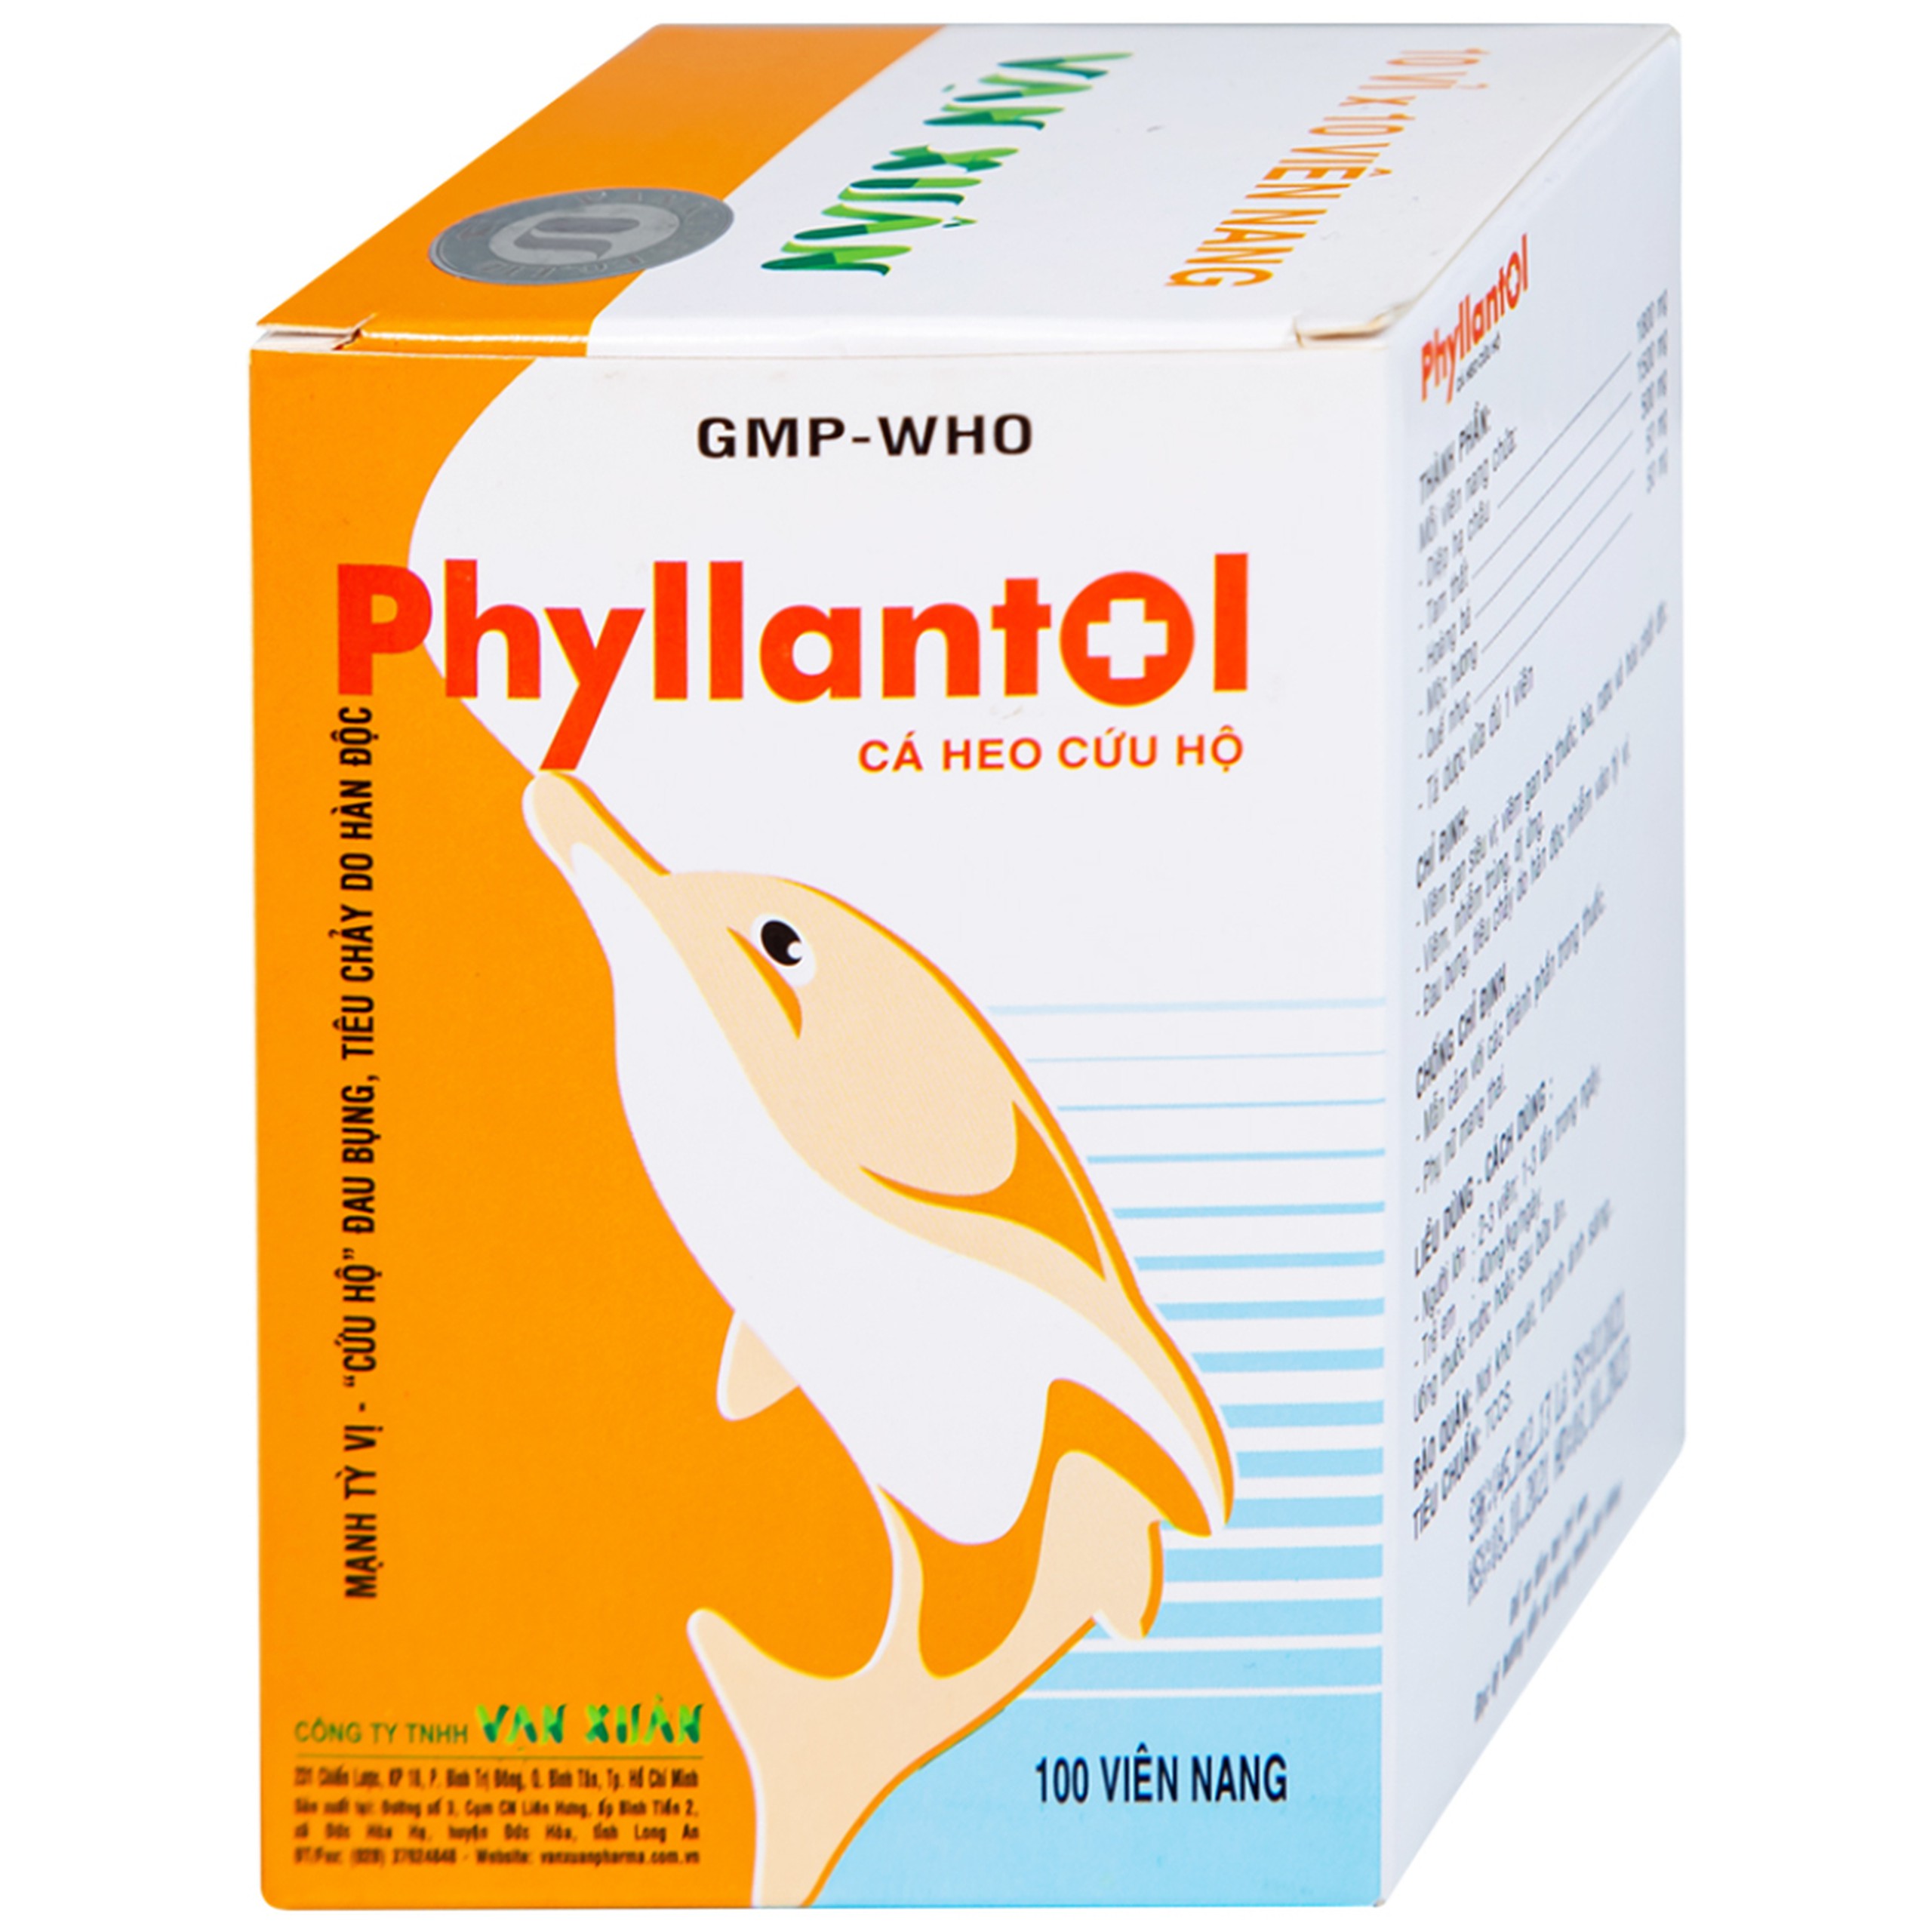 Viên nang Phyllantol Vạn Xuân điều trị bệnh tiêu hóa, gan mật, mệt mỏi, ngực sườn đầy tức (10 vỉ x 10 viên) 